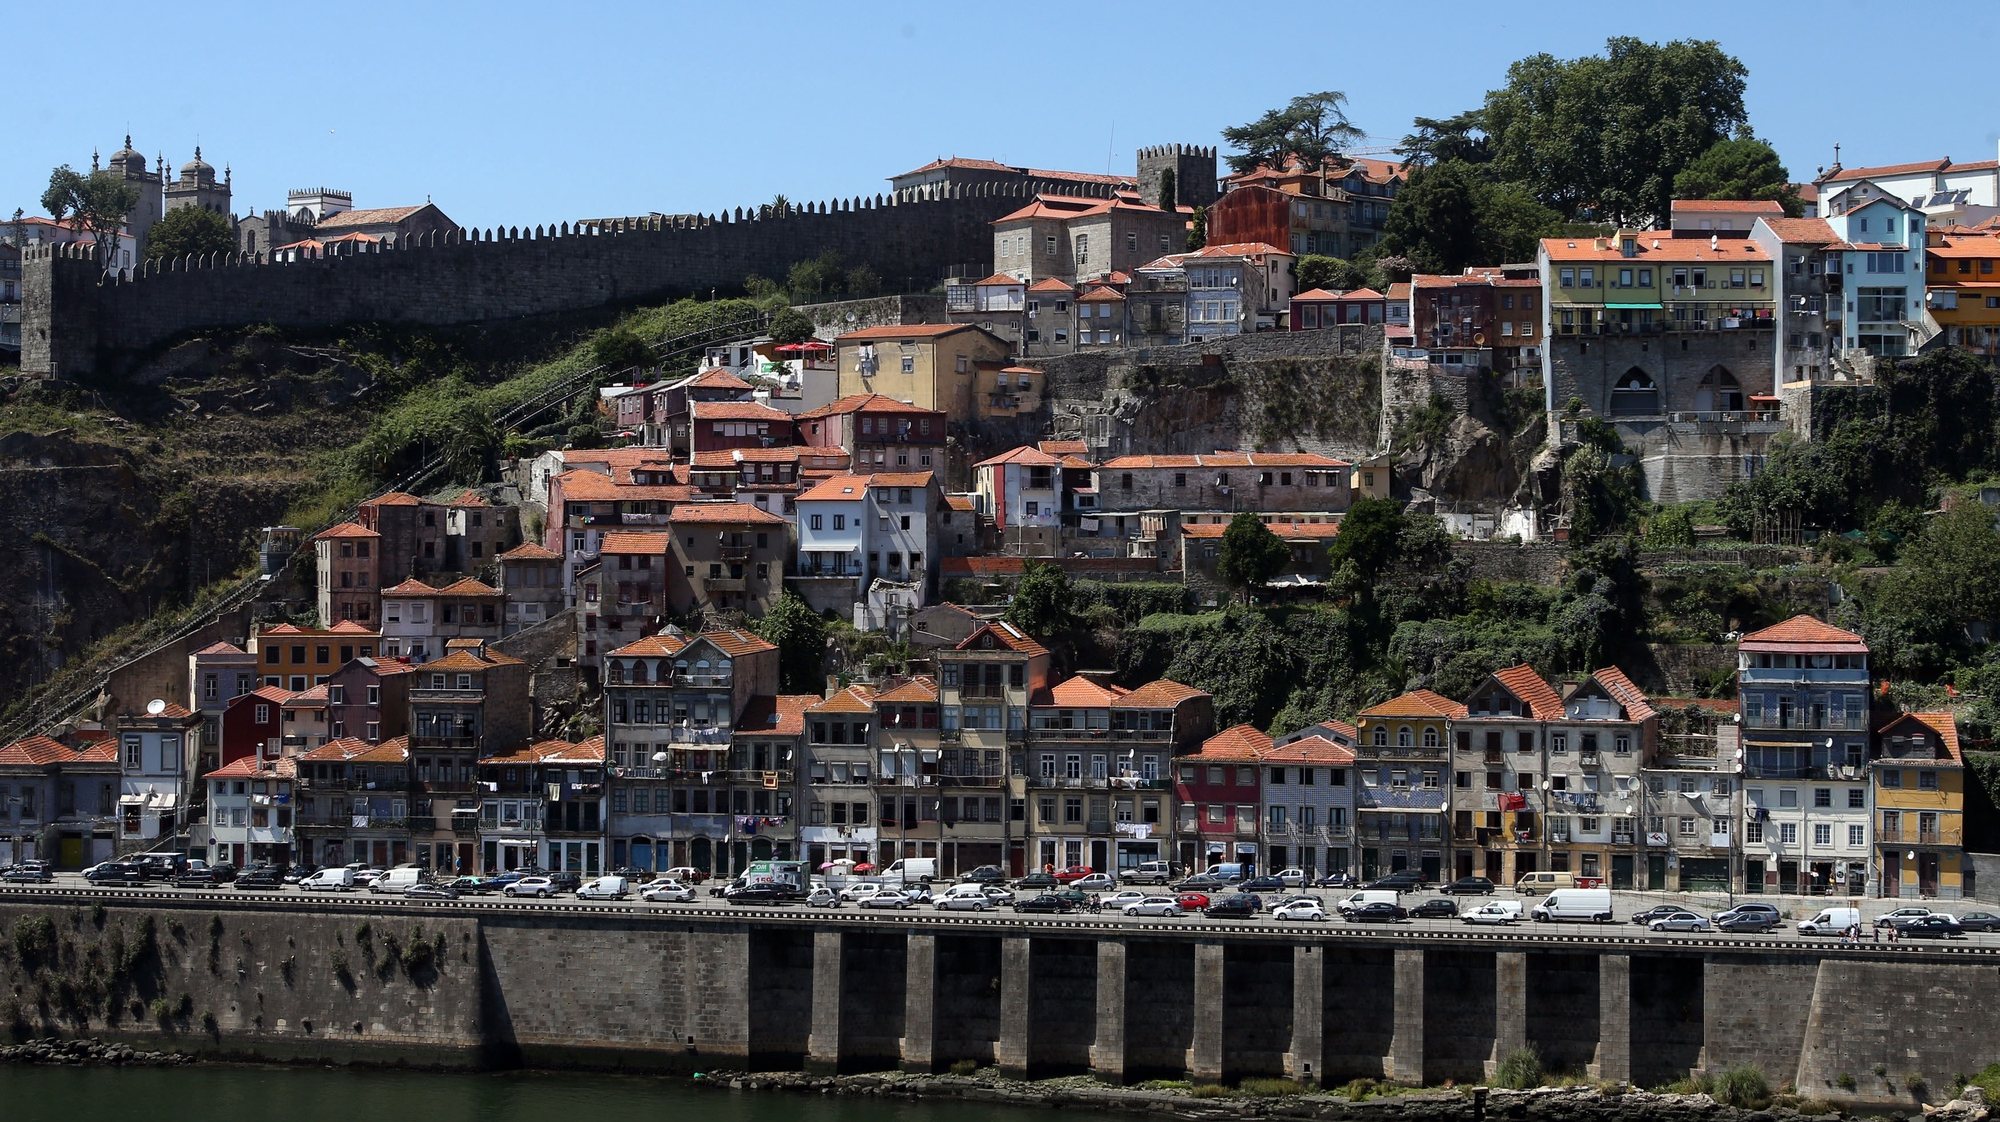 Realojadas em casas municipais 16 das 18 famílias do bairro dos Moinhos no Porto